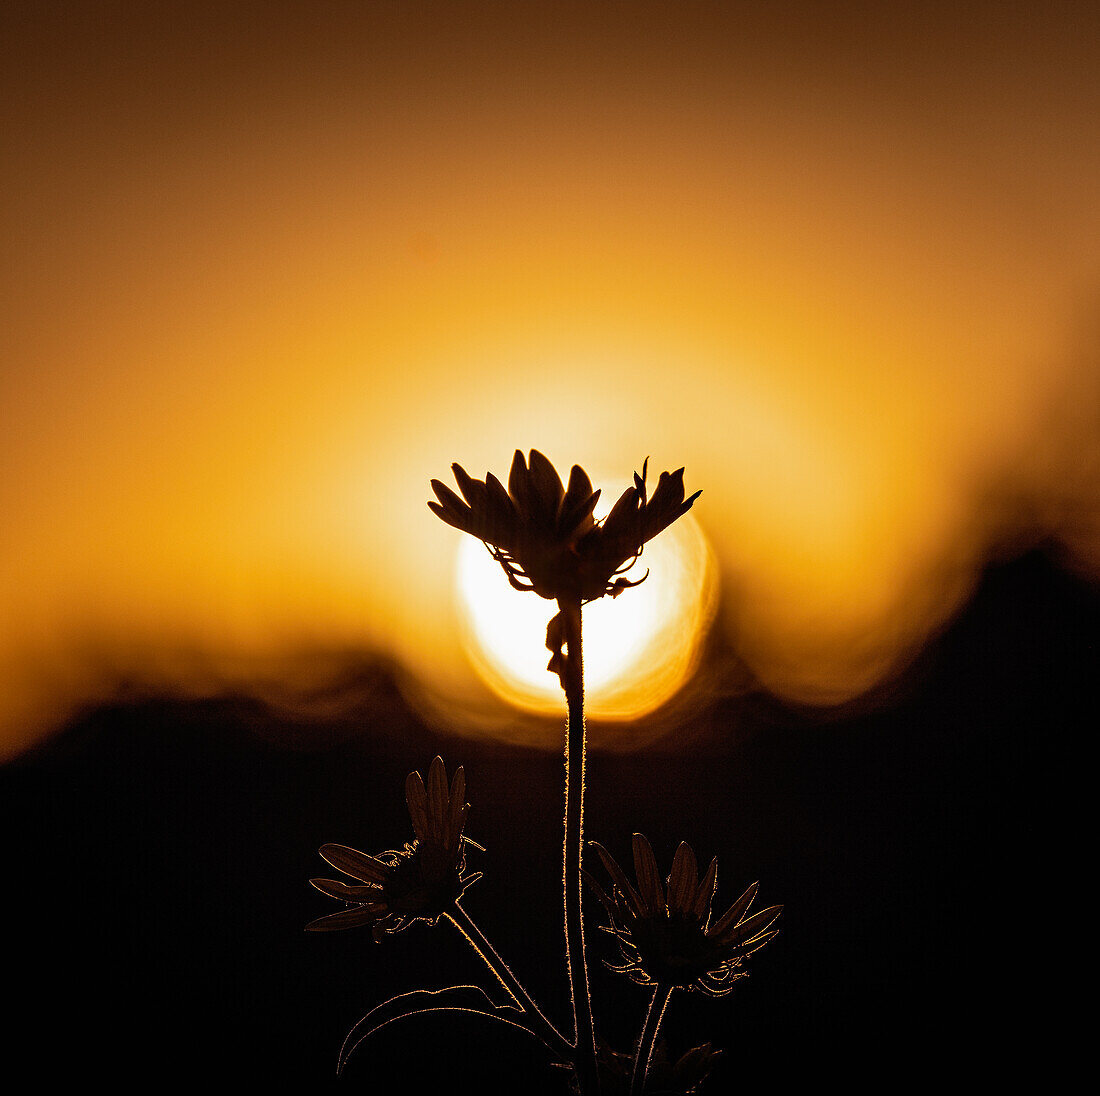 Silhouette einer Wildblume gegen den Himmel bei Sonnenuntergang